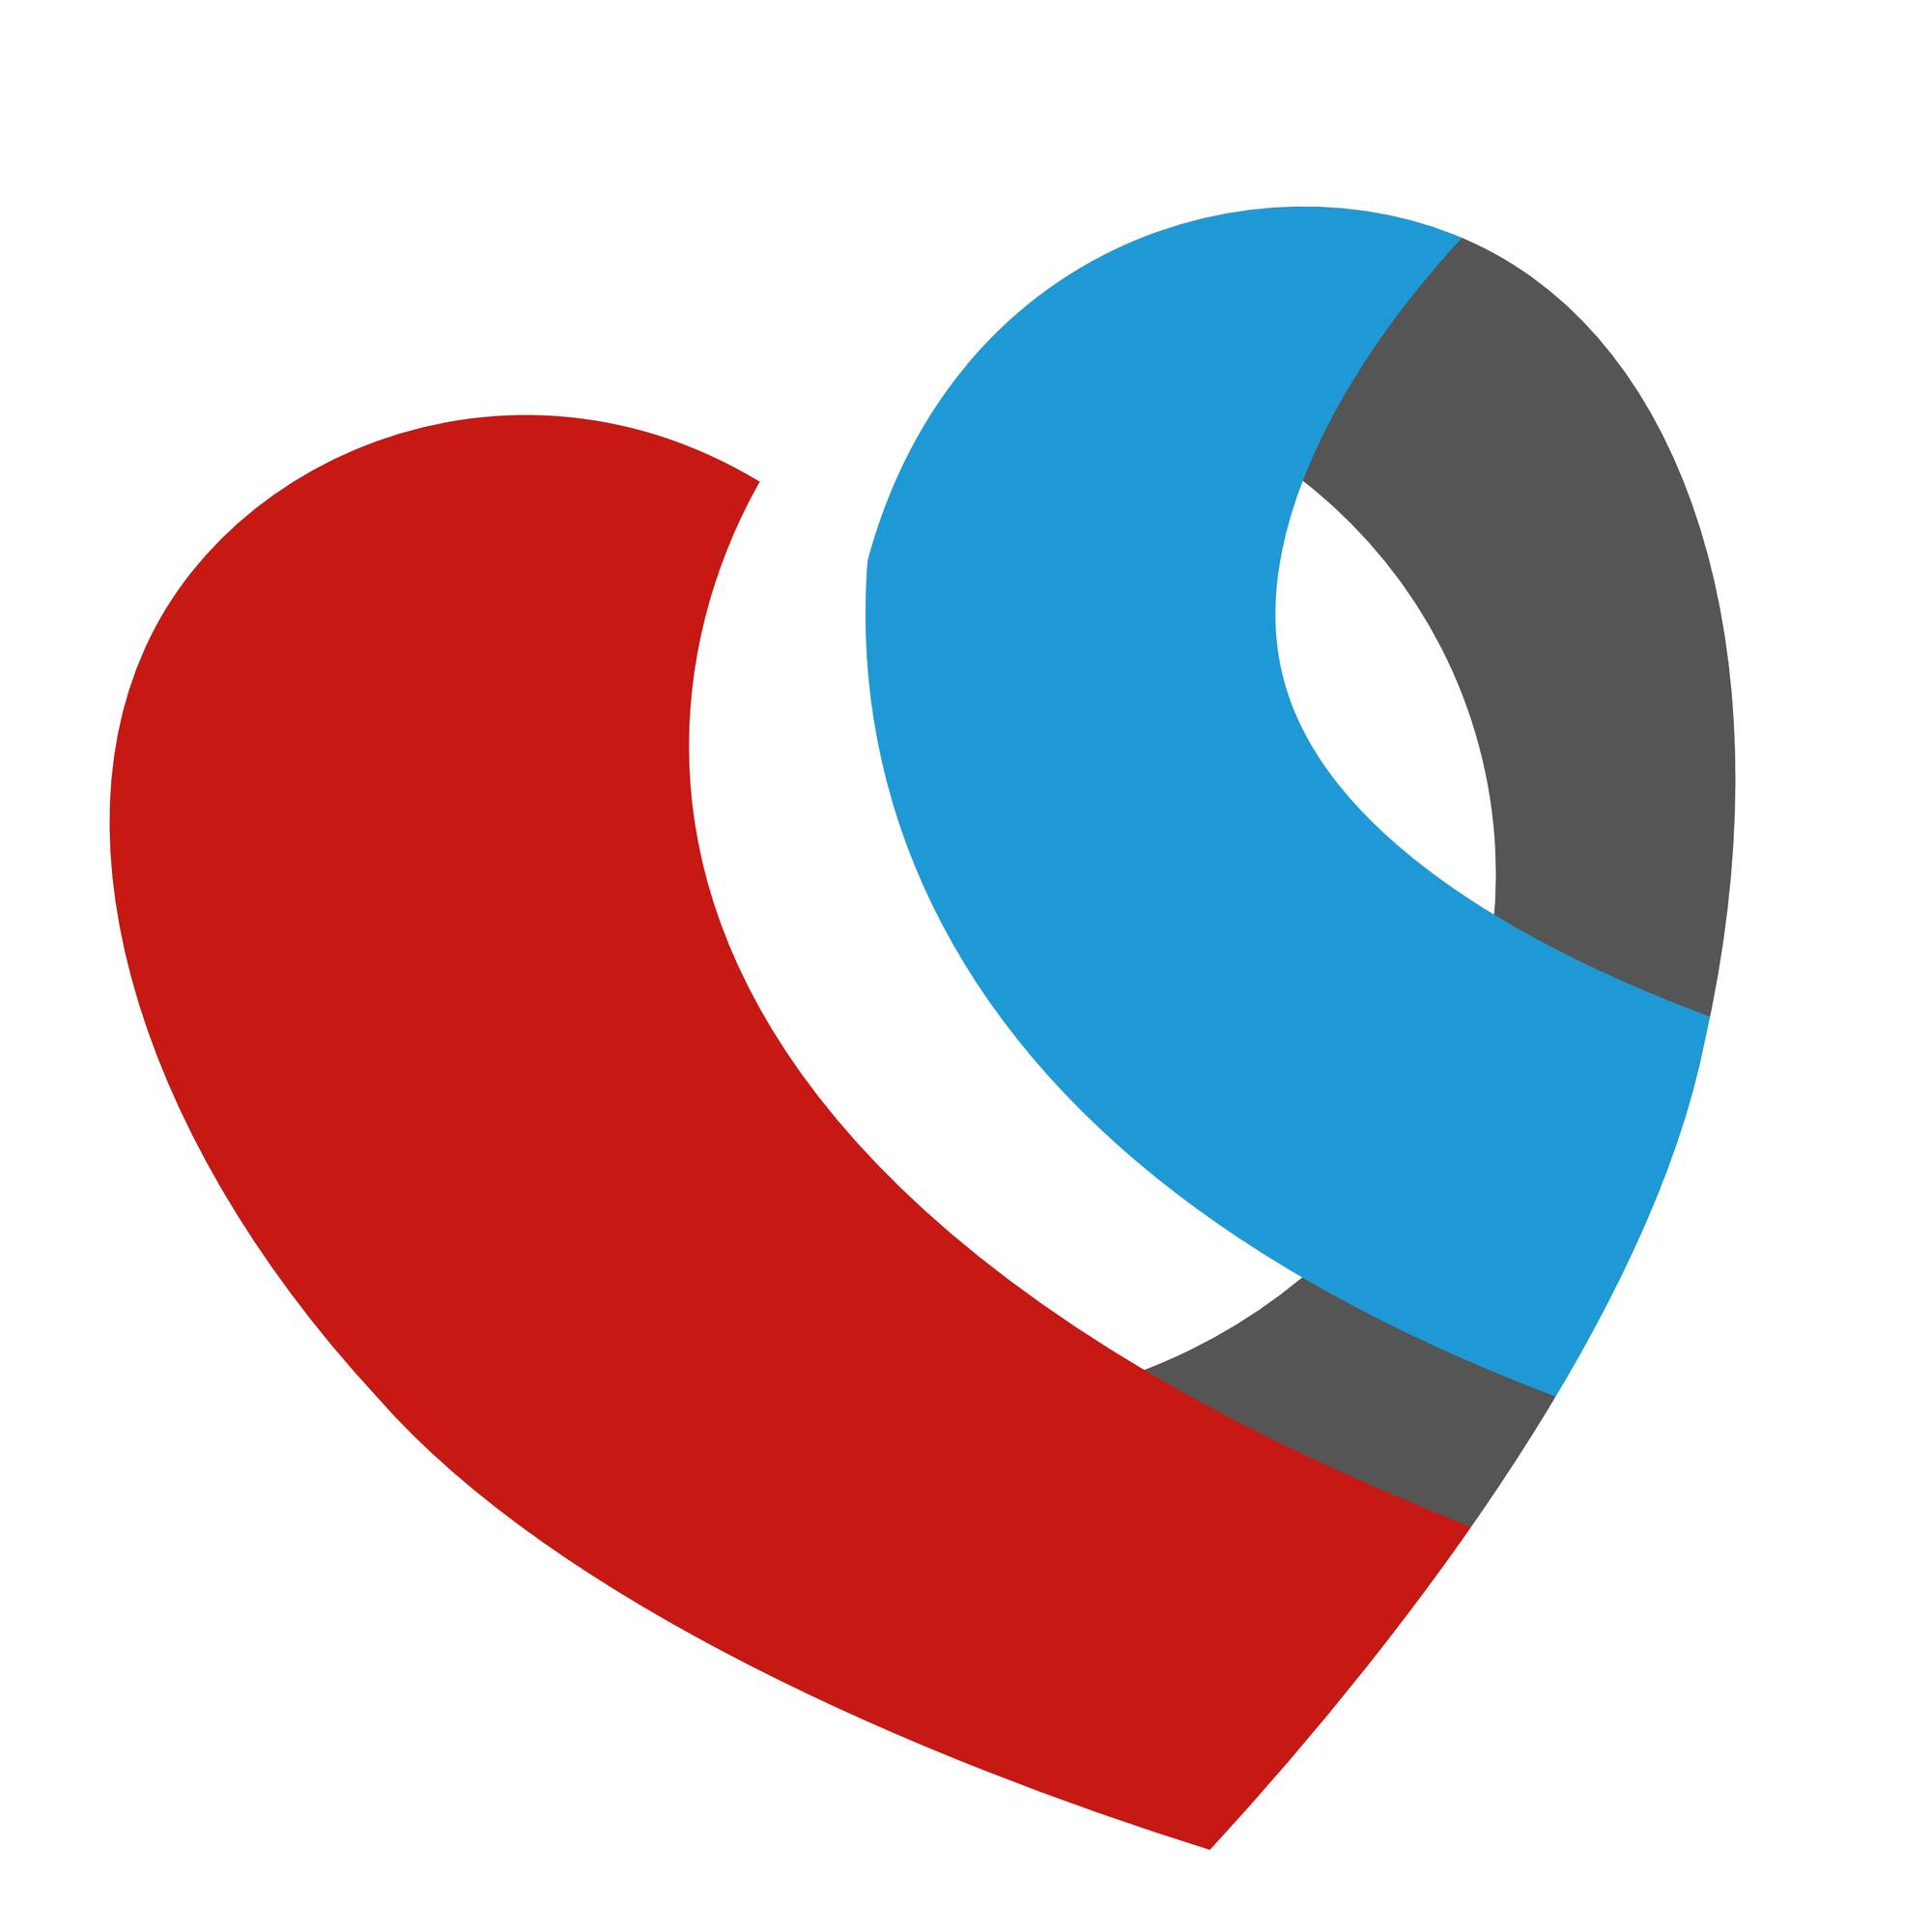 Logo COC Haaglanden. Is letterspel met COC in hartvorm. De C links is rood, de C rechts is blauw. Verder een witte achtergrond. 